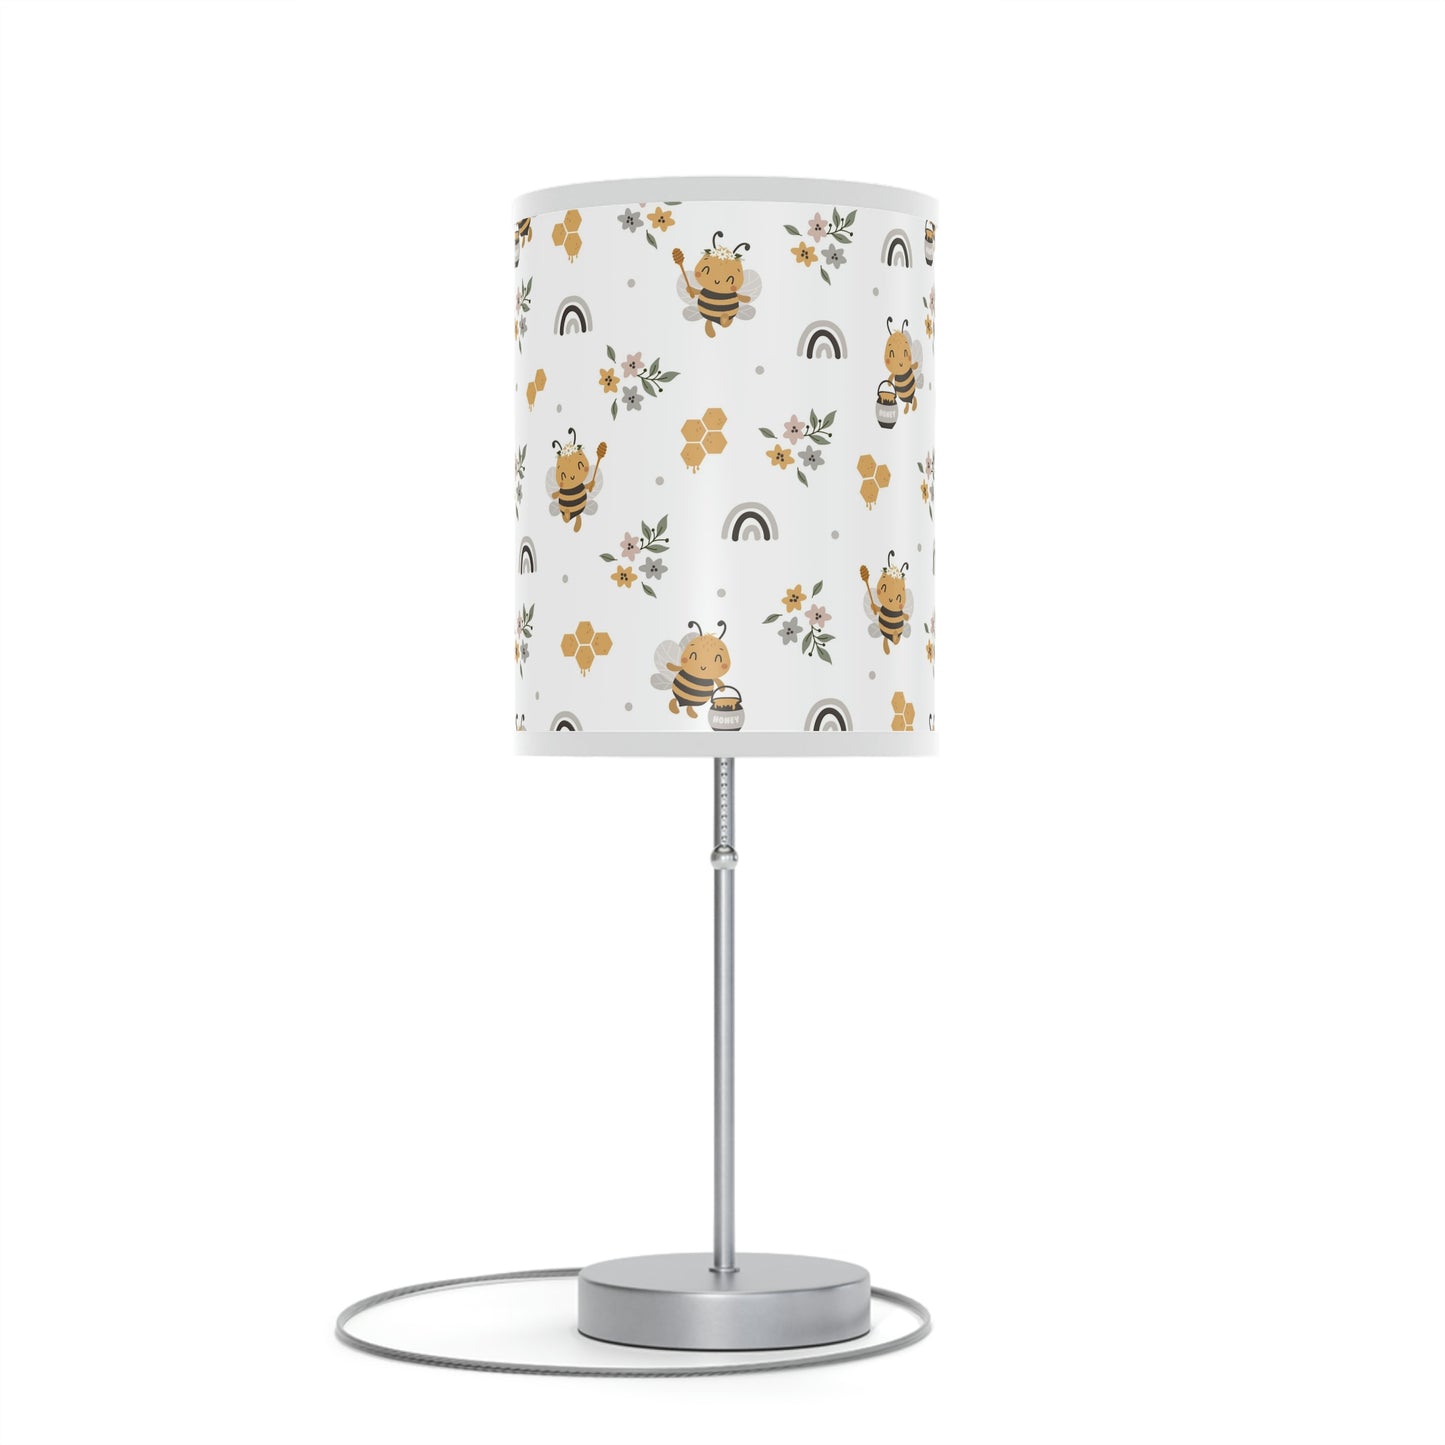 honeybee nursery table lamp, honeybee baby nursery lamp